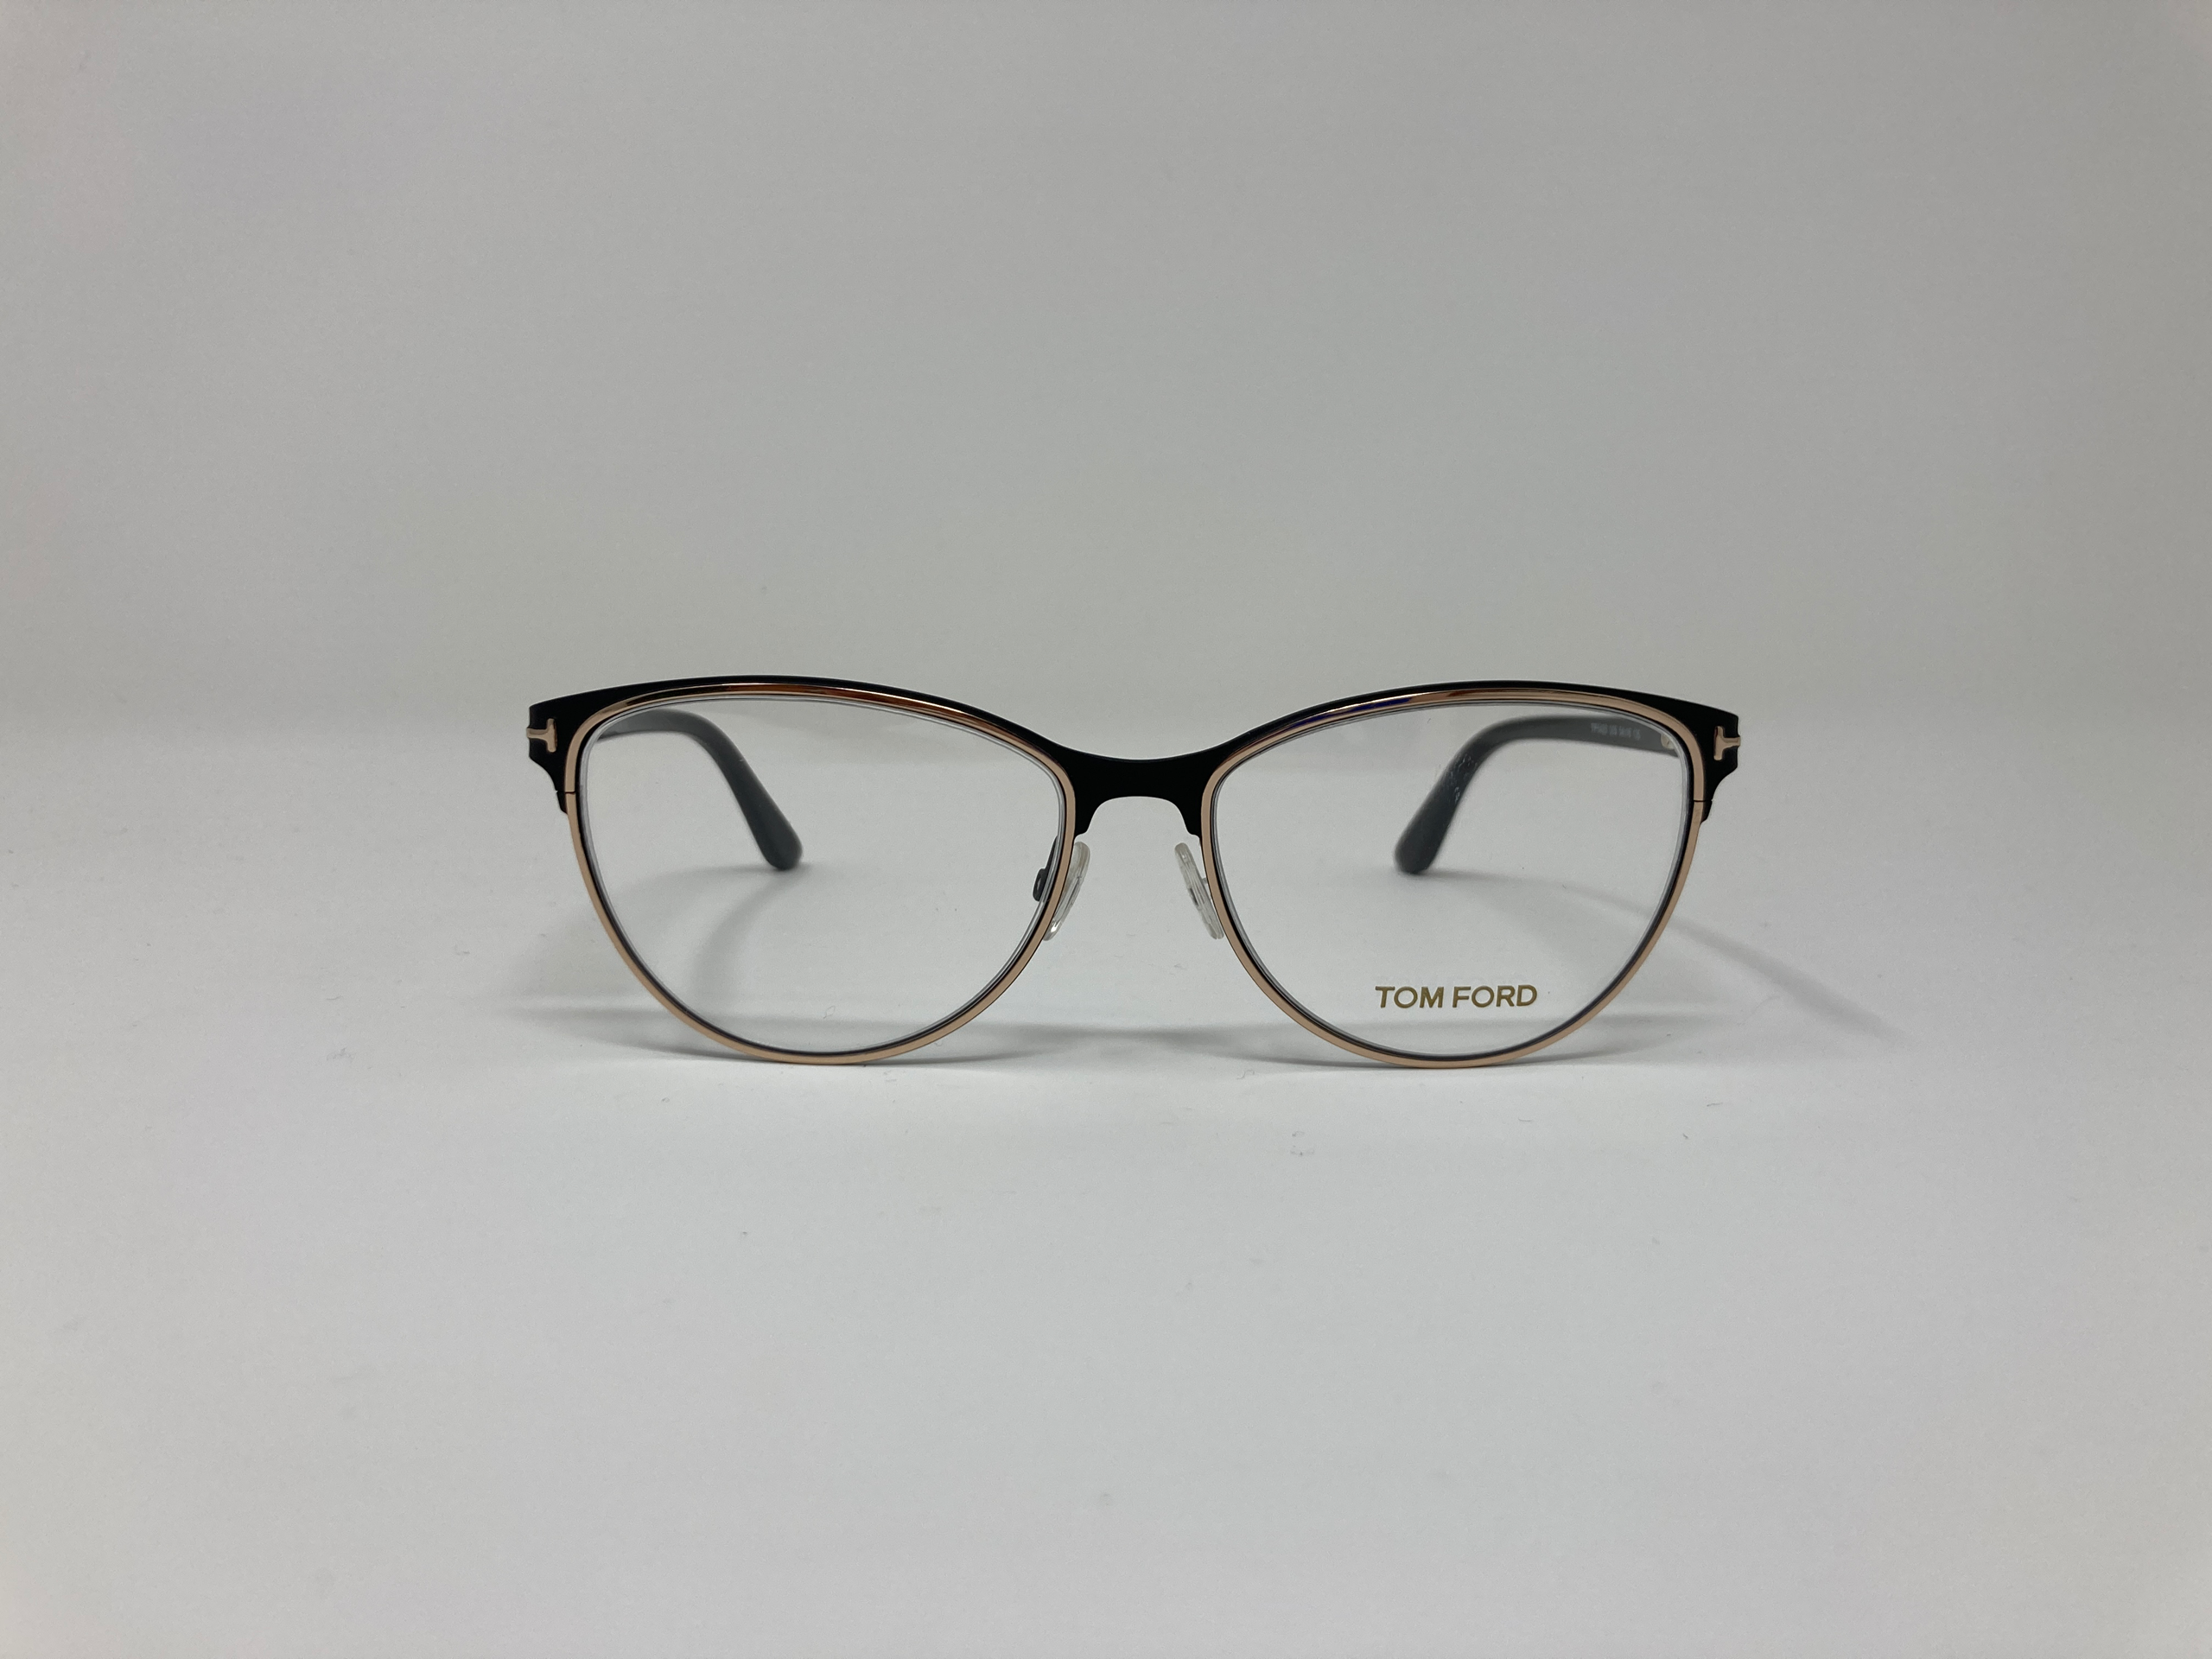 Tom Ford TF 5420 Unisex eyeglasses